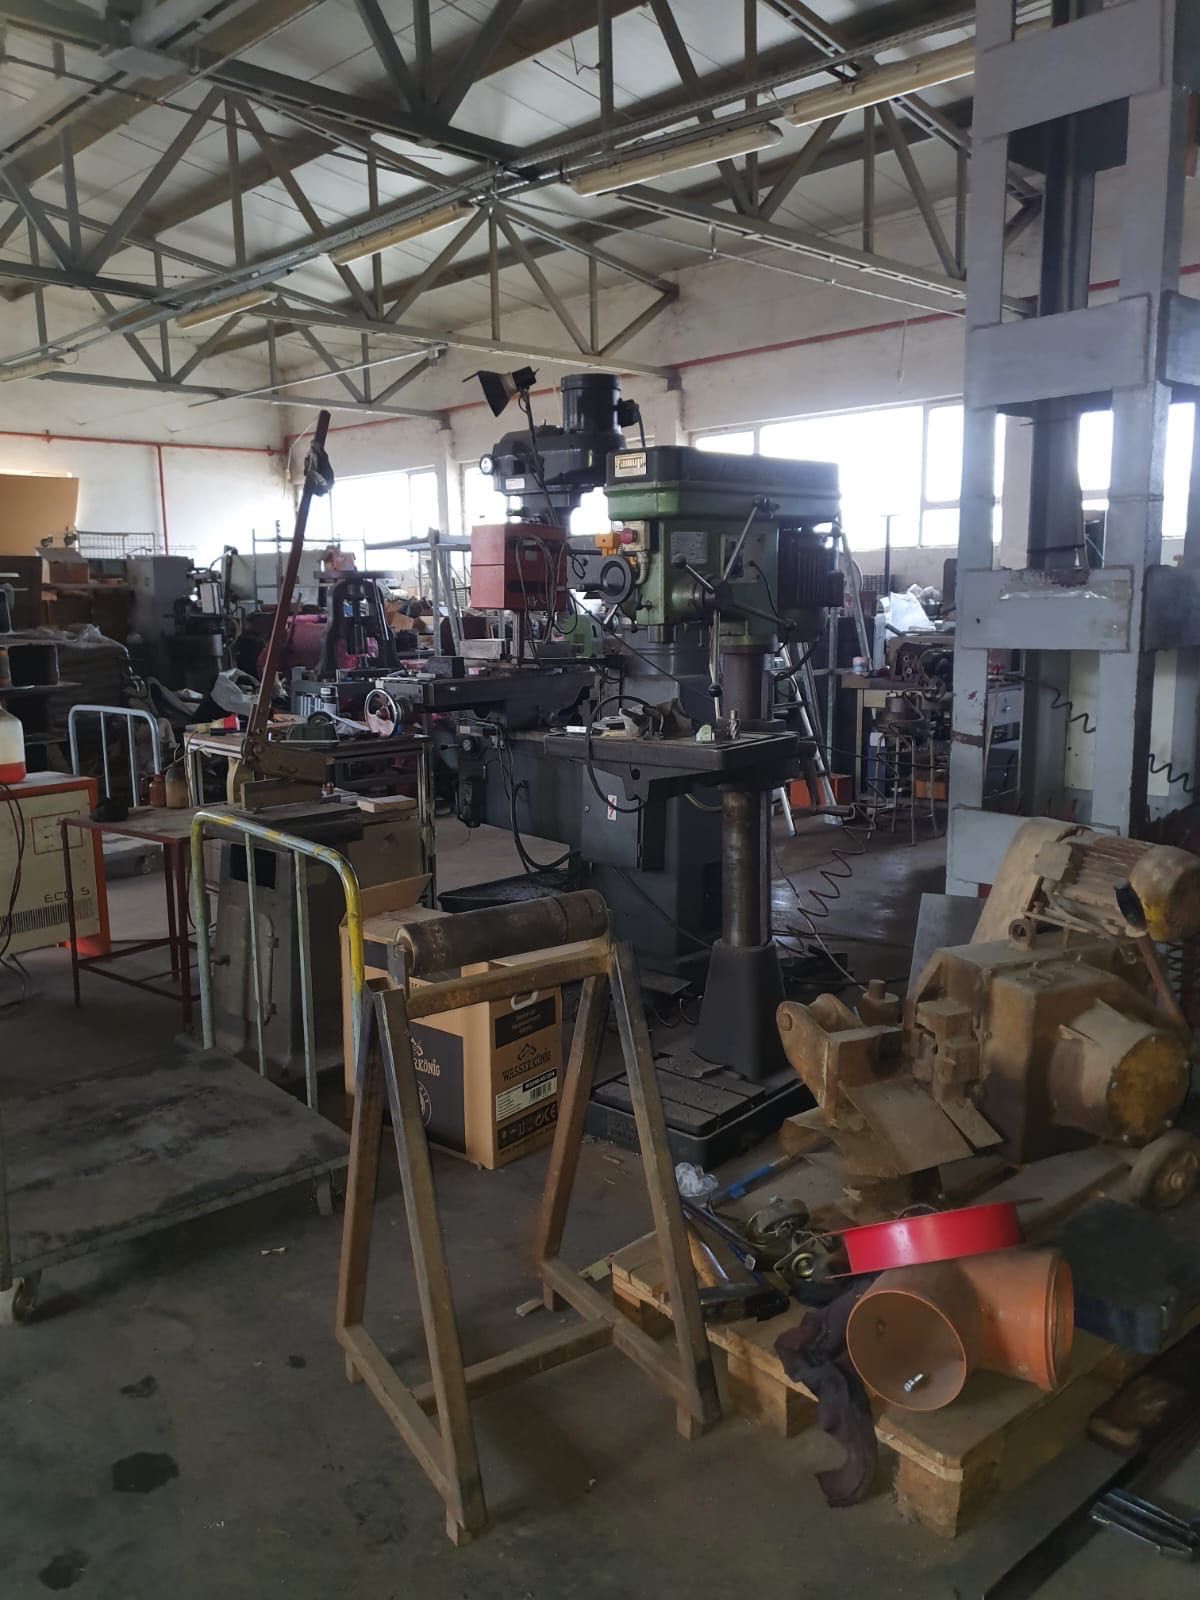 Vând atelier mecanic complet achiziționat în Italia